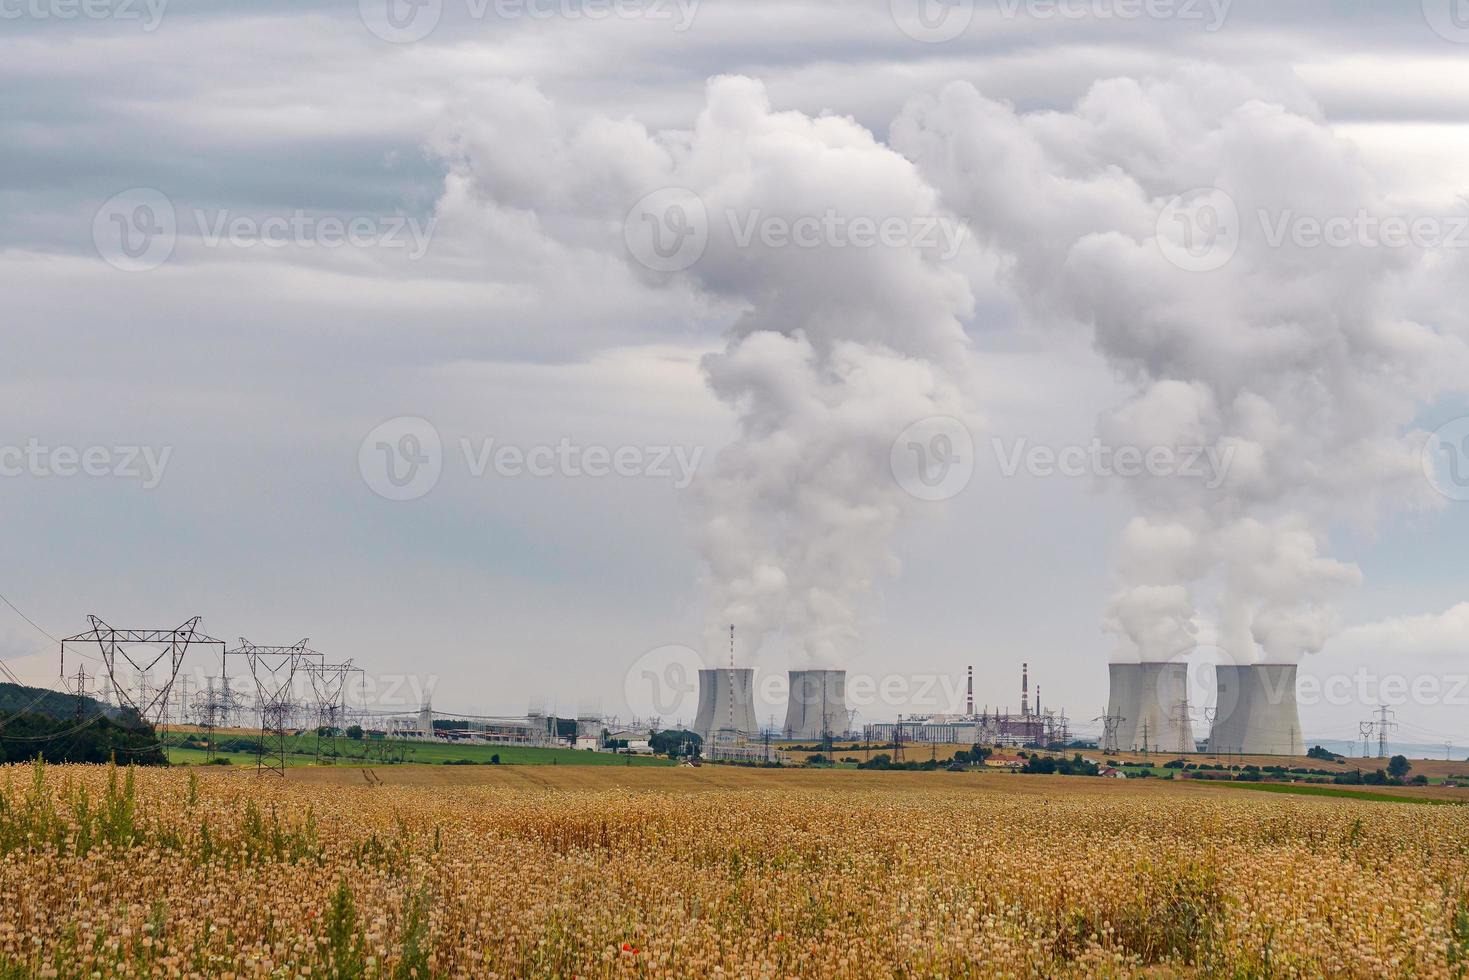 torres de resfriamento de uma usina nuclear. central nuclear Dukovany. região de vysocina, república tcheca, europa. foto